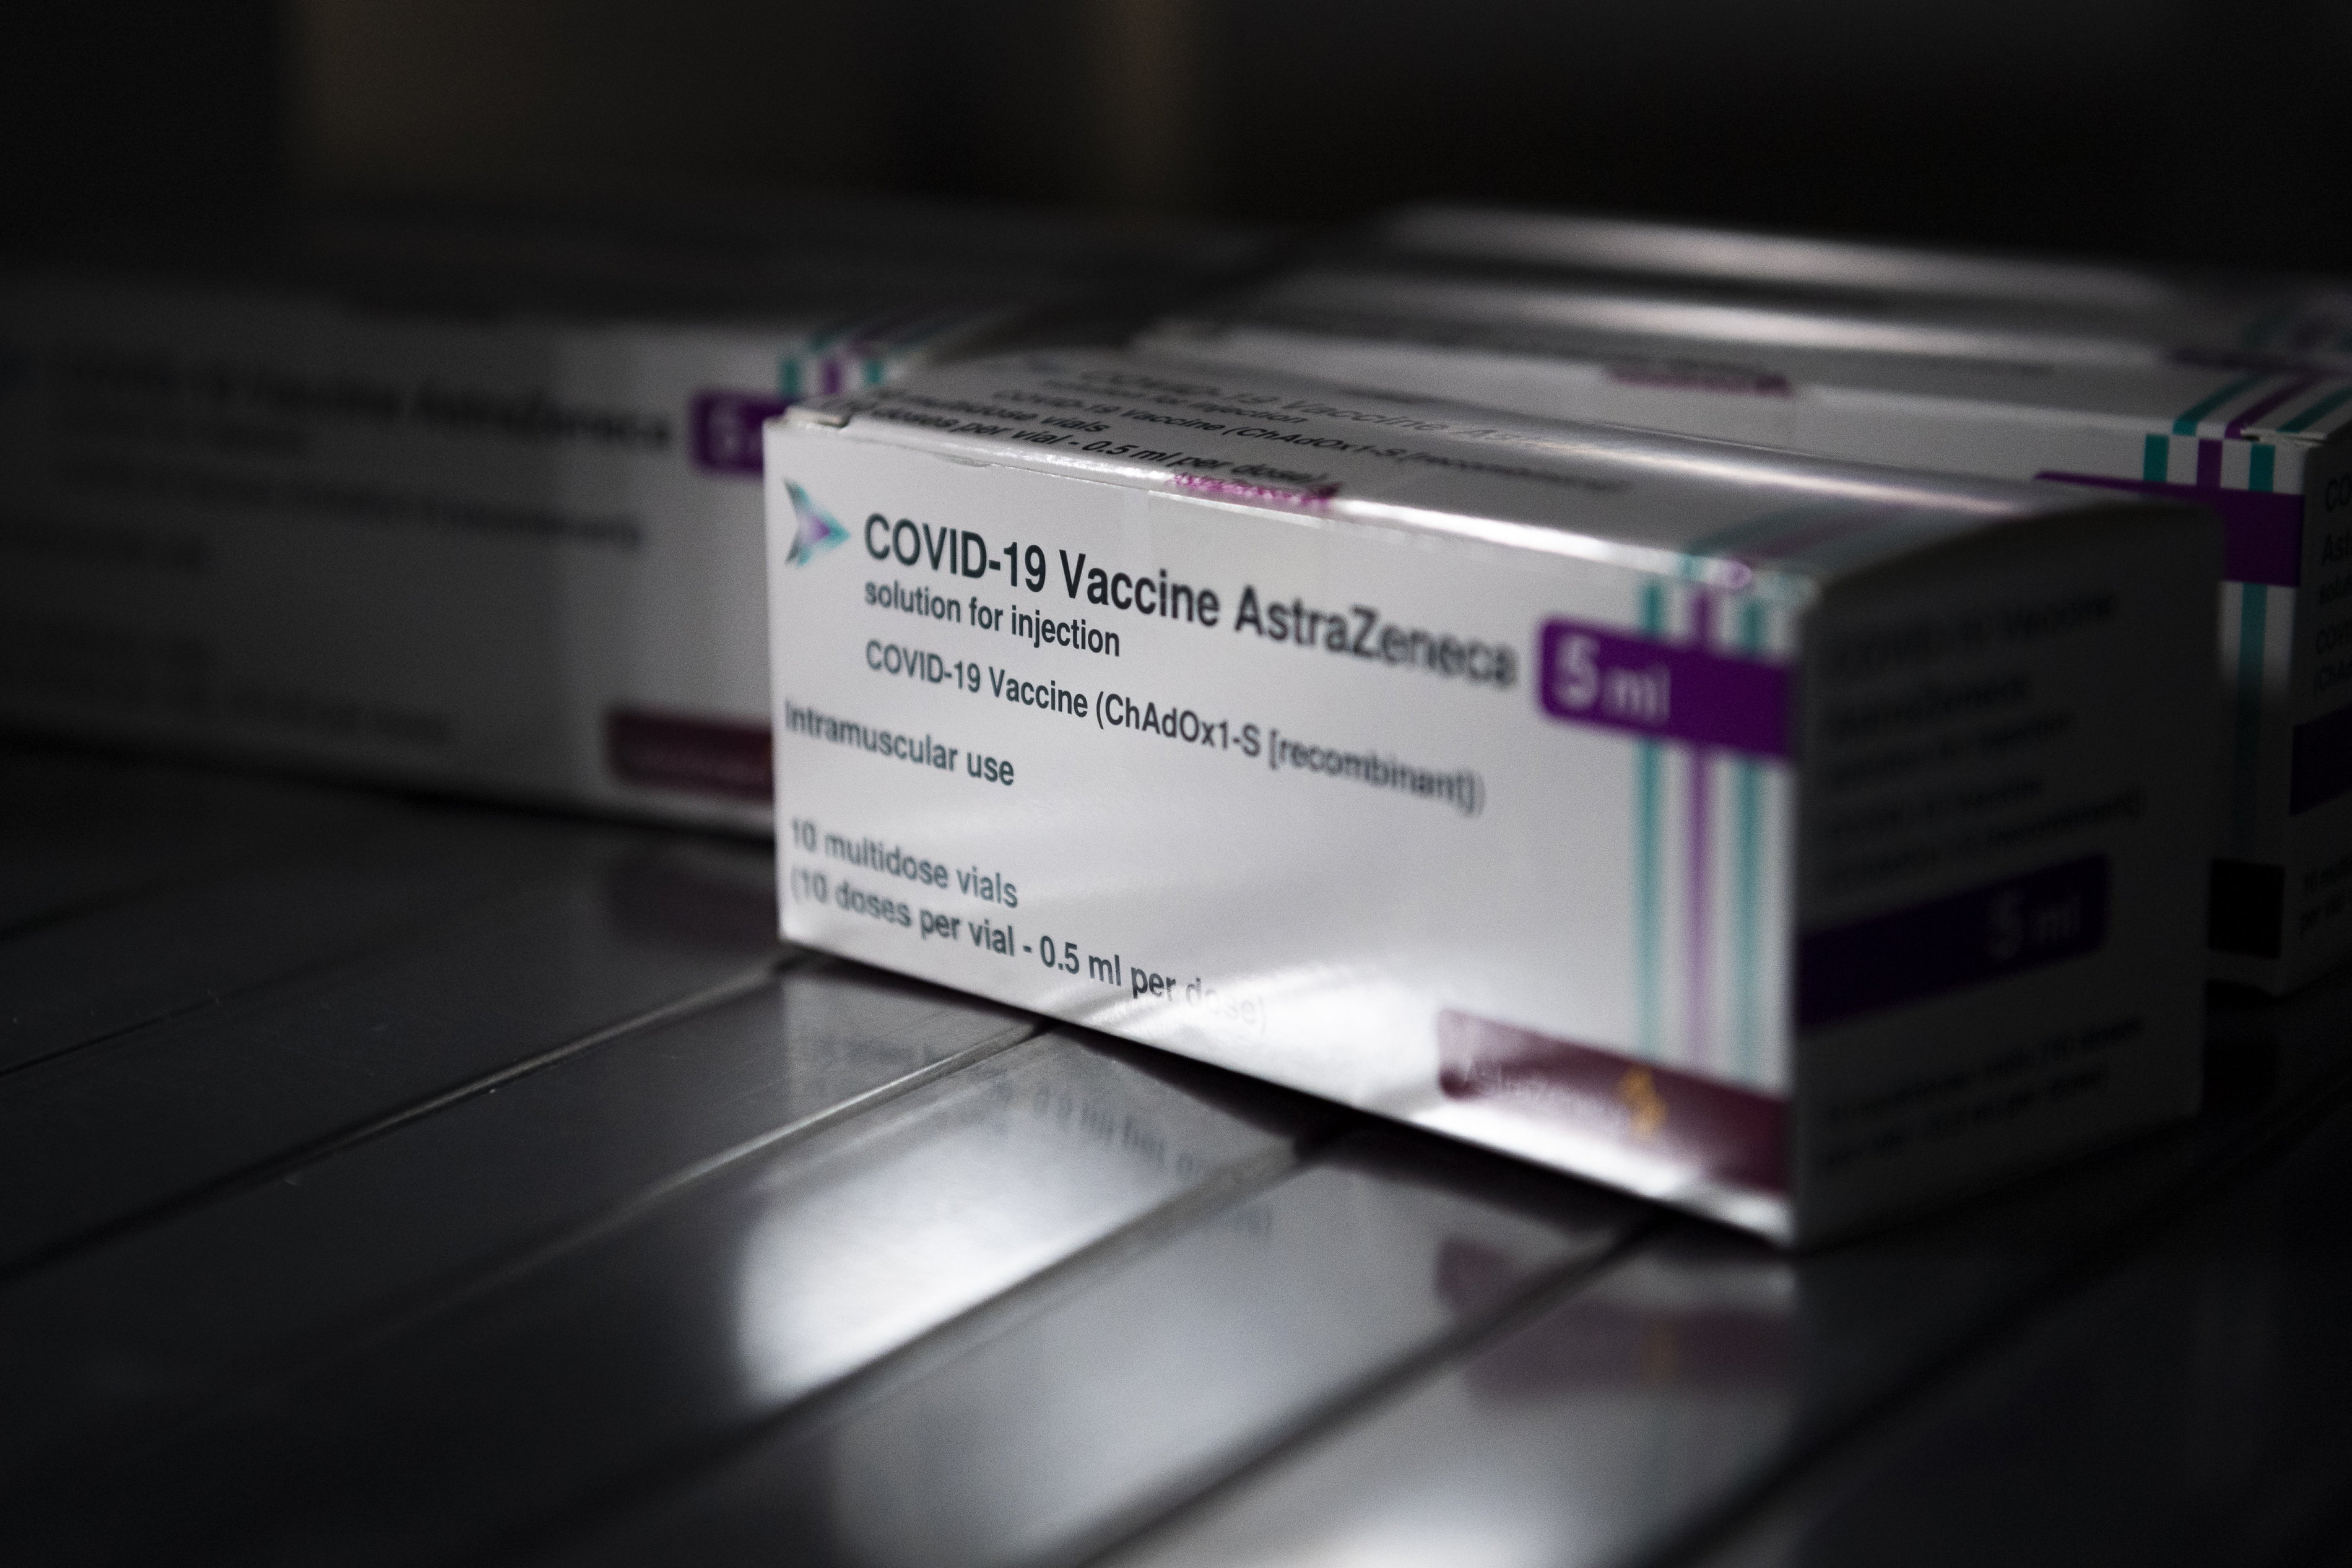 Biztonságos és hatásos az AstraZeneca vakcinája az Európai Gyógyszerügynökség szerint